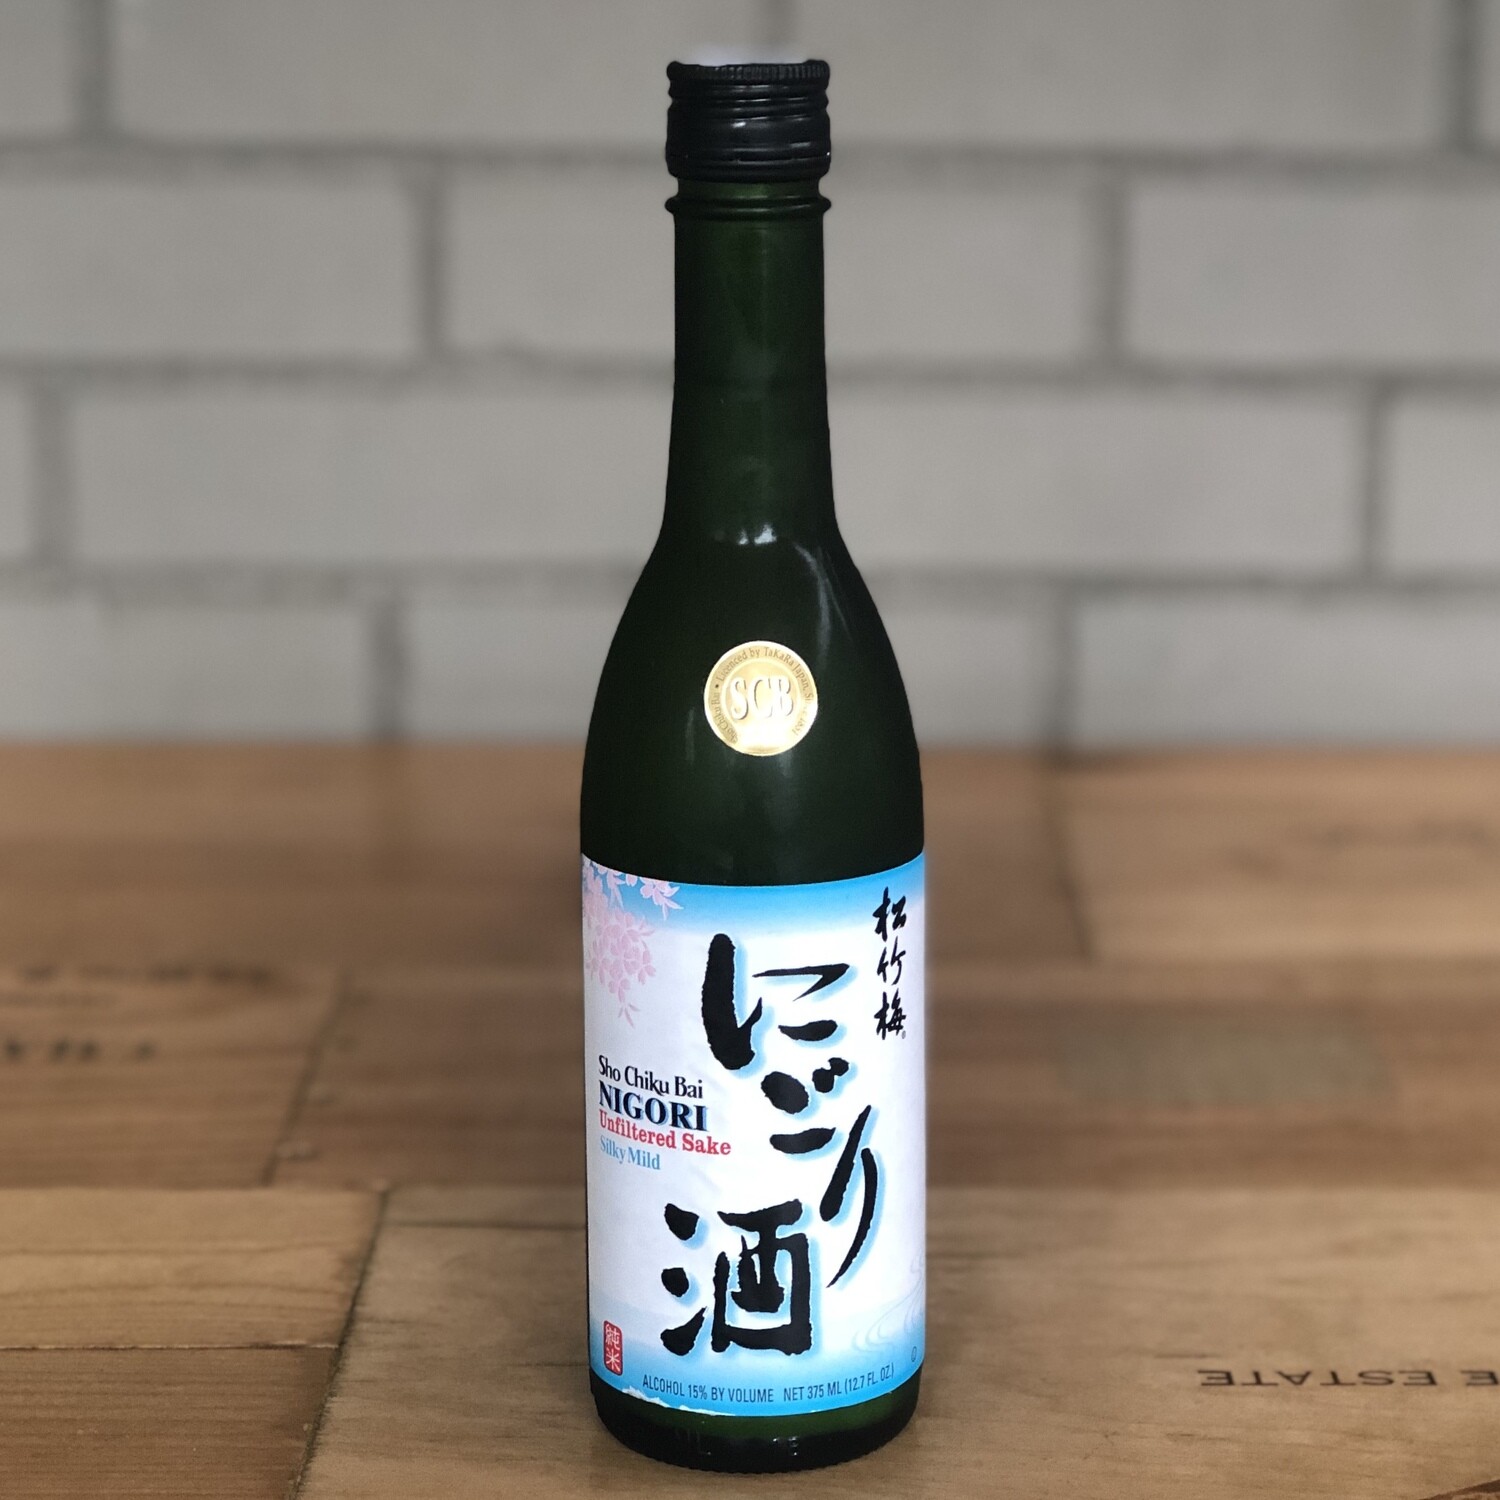 Sho Chiku Bai Nigori Sake (375ml)